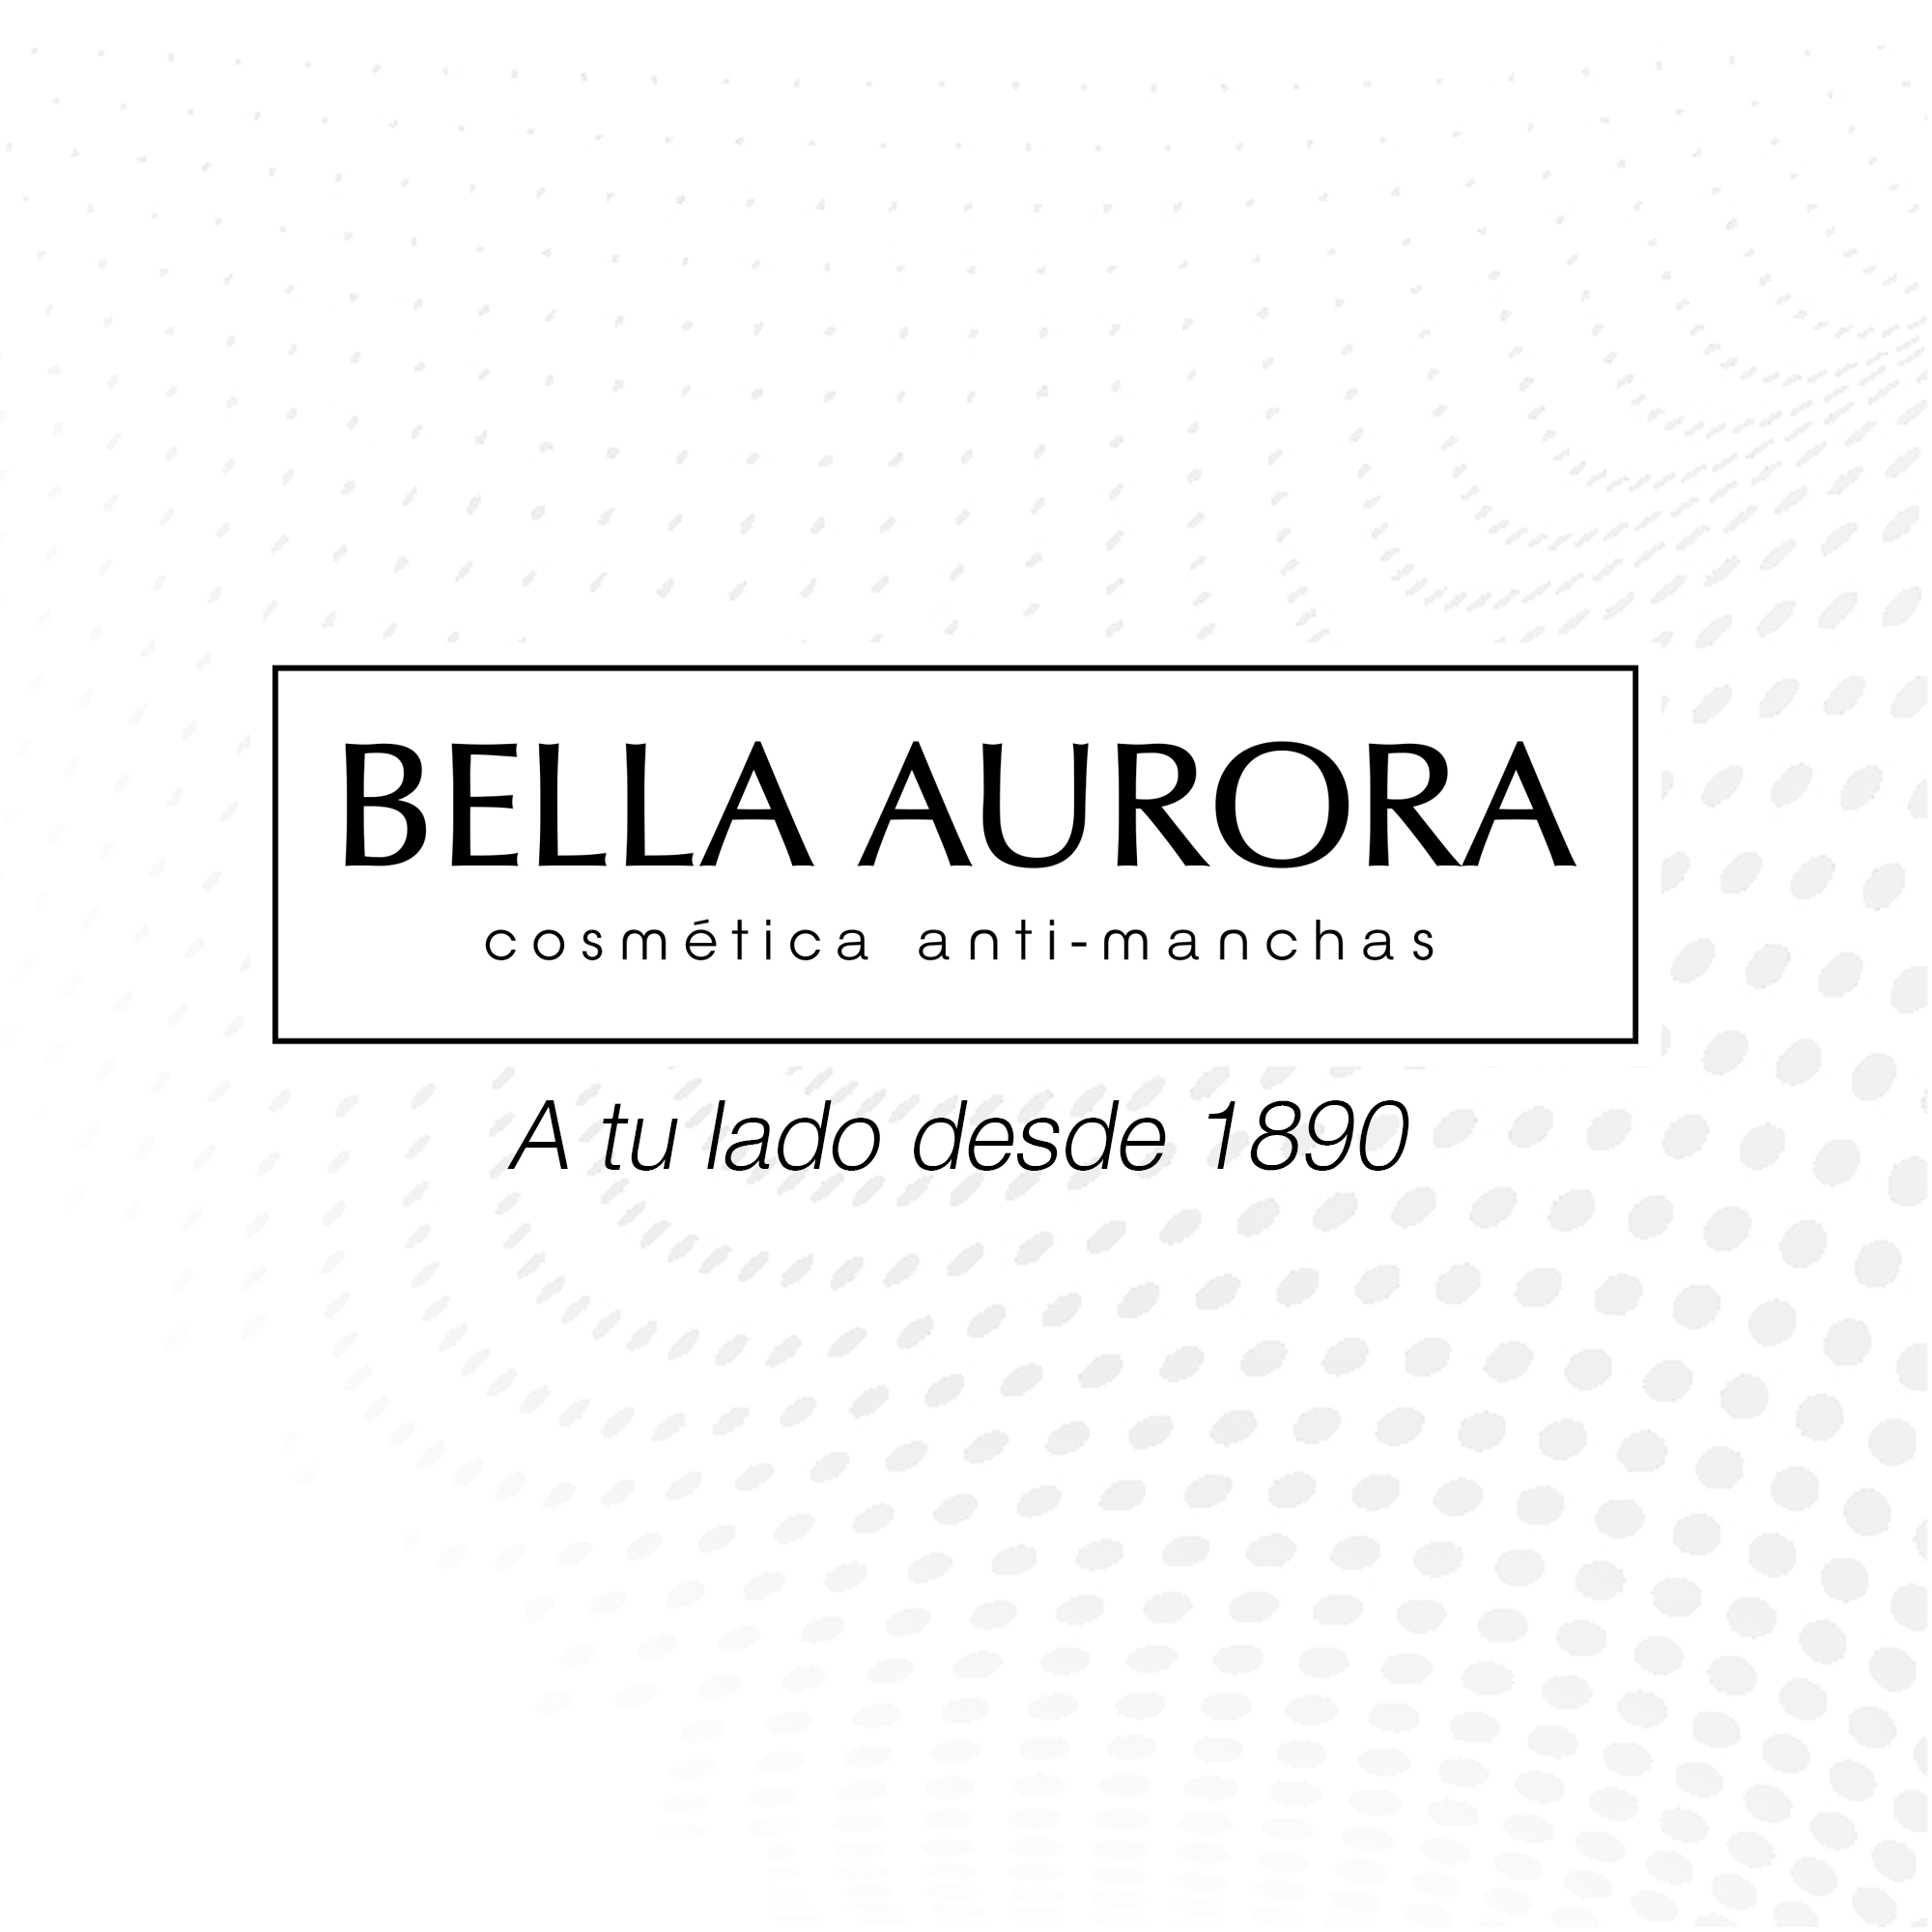 BELLA AURORA - Bio10 Forte Sensitive 30 ml, Serum Anti-Manchas Intensivo. para Manchas Oscuras, Sobre Exposición Solar, Edad u Hormonales, Tratamiento Quita Manchas para Pieles Sensibles - video poster